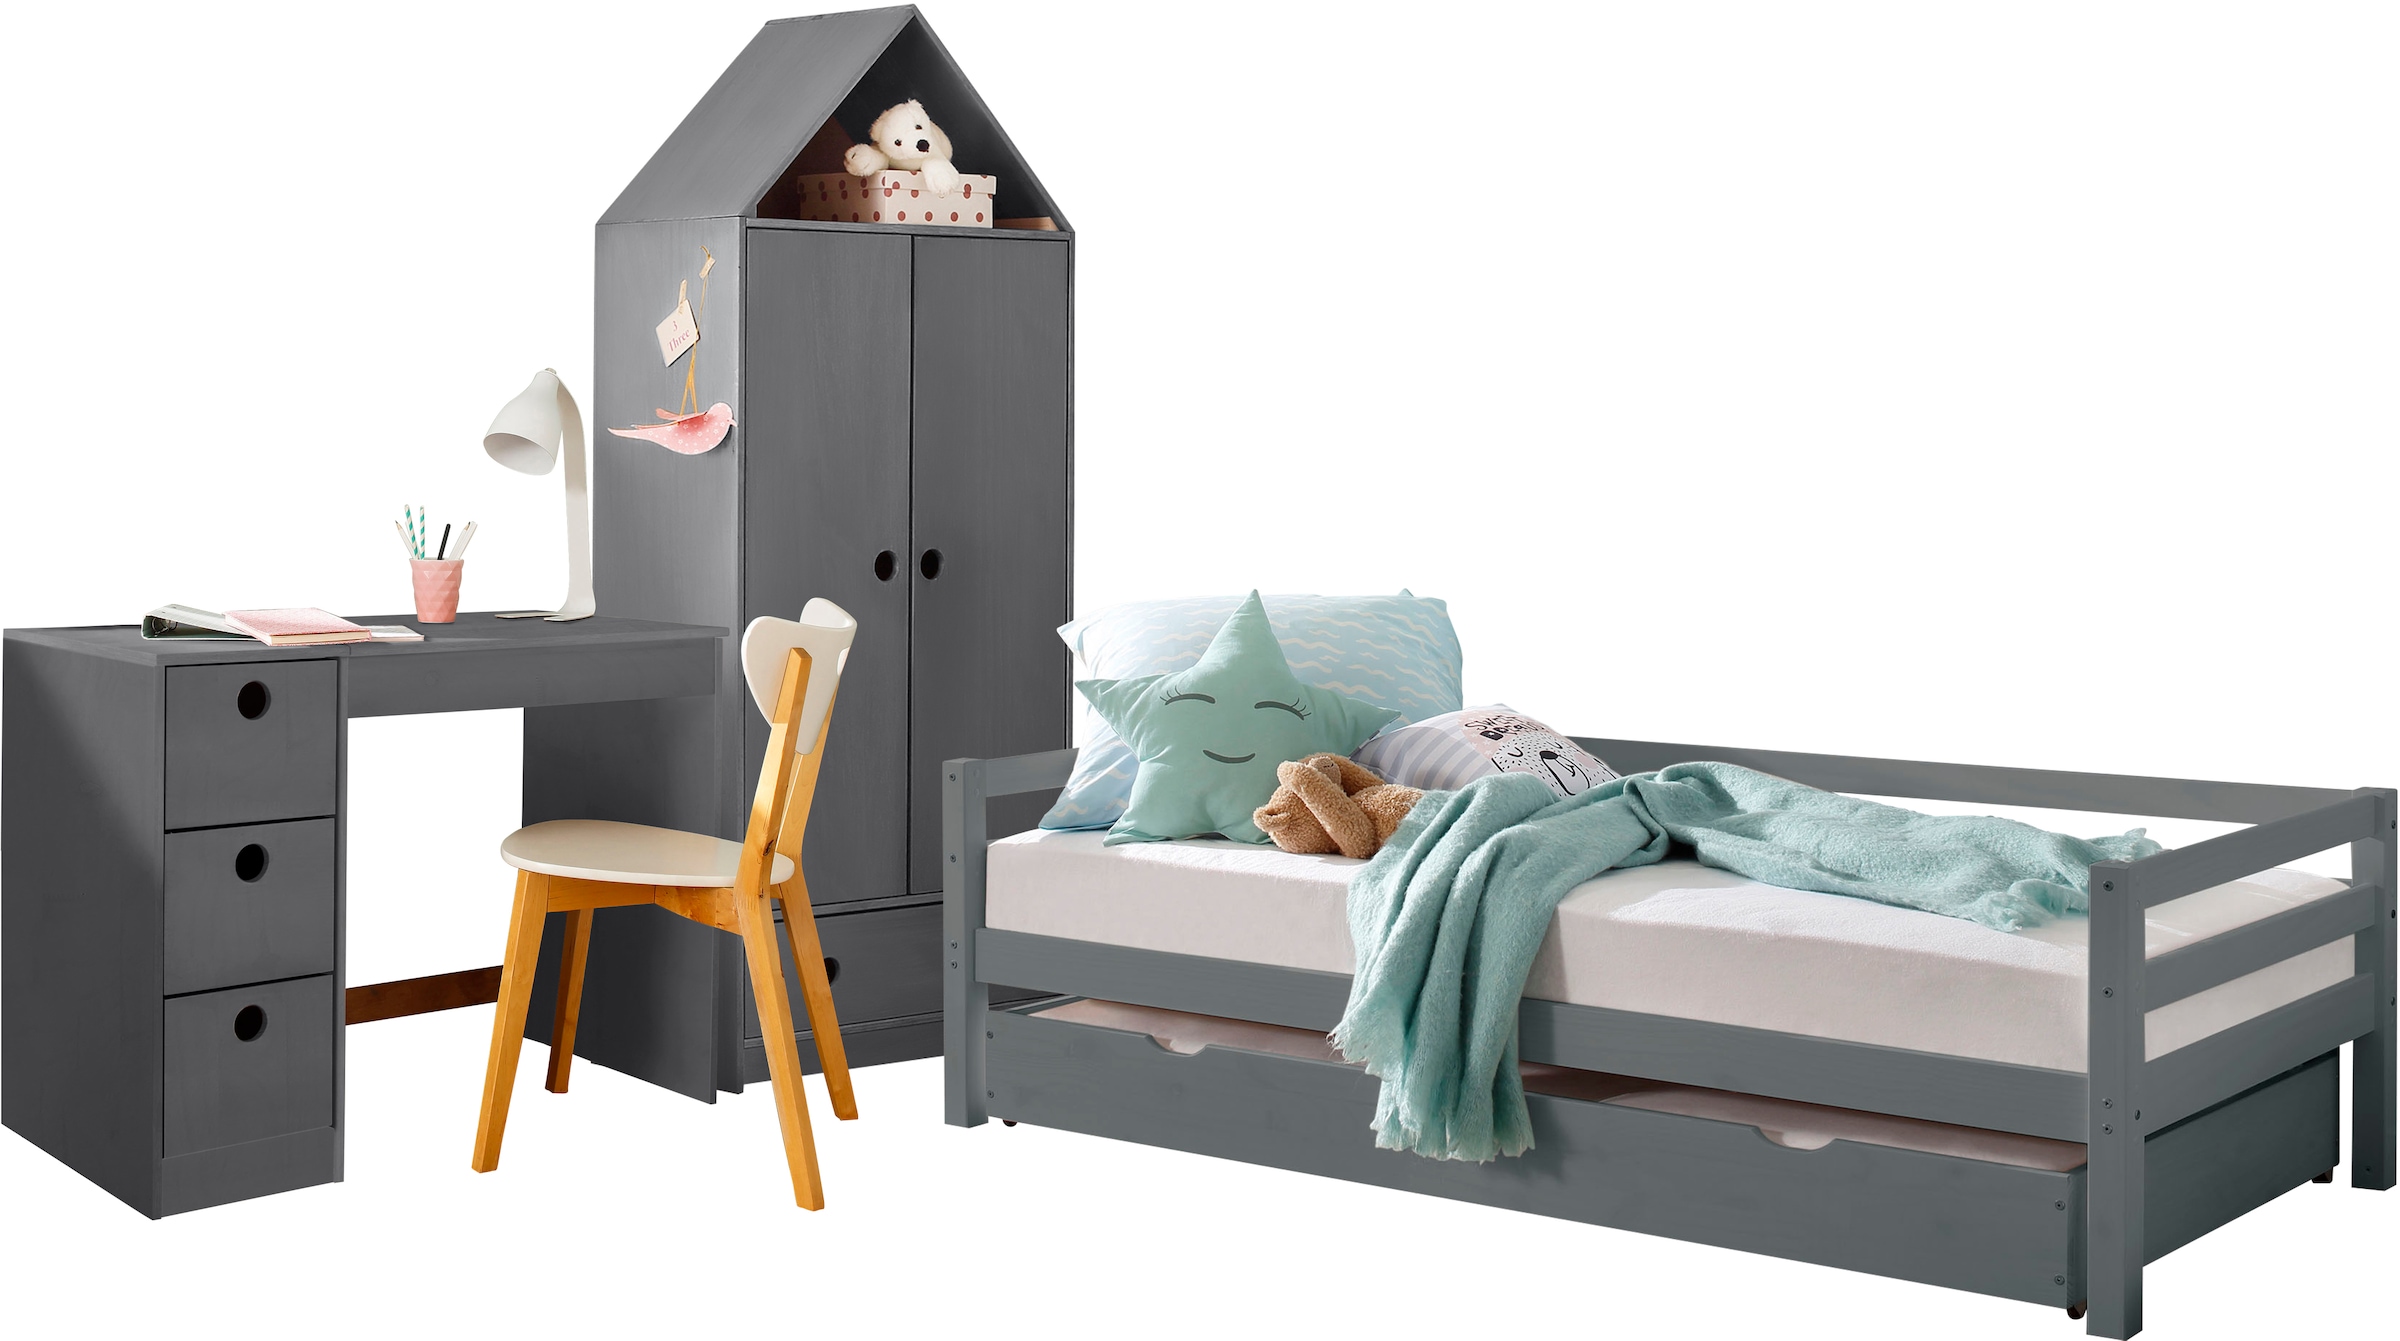 Lüttenhütt Daybett »Alpi«, mit Schubkasten aus Kiefernholz, Aussenbreite 103 cm, Kinderbett